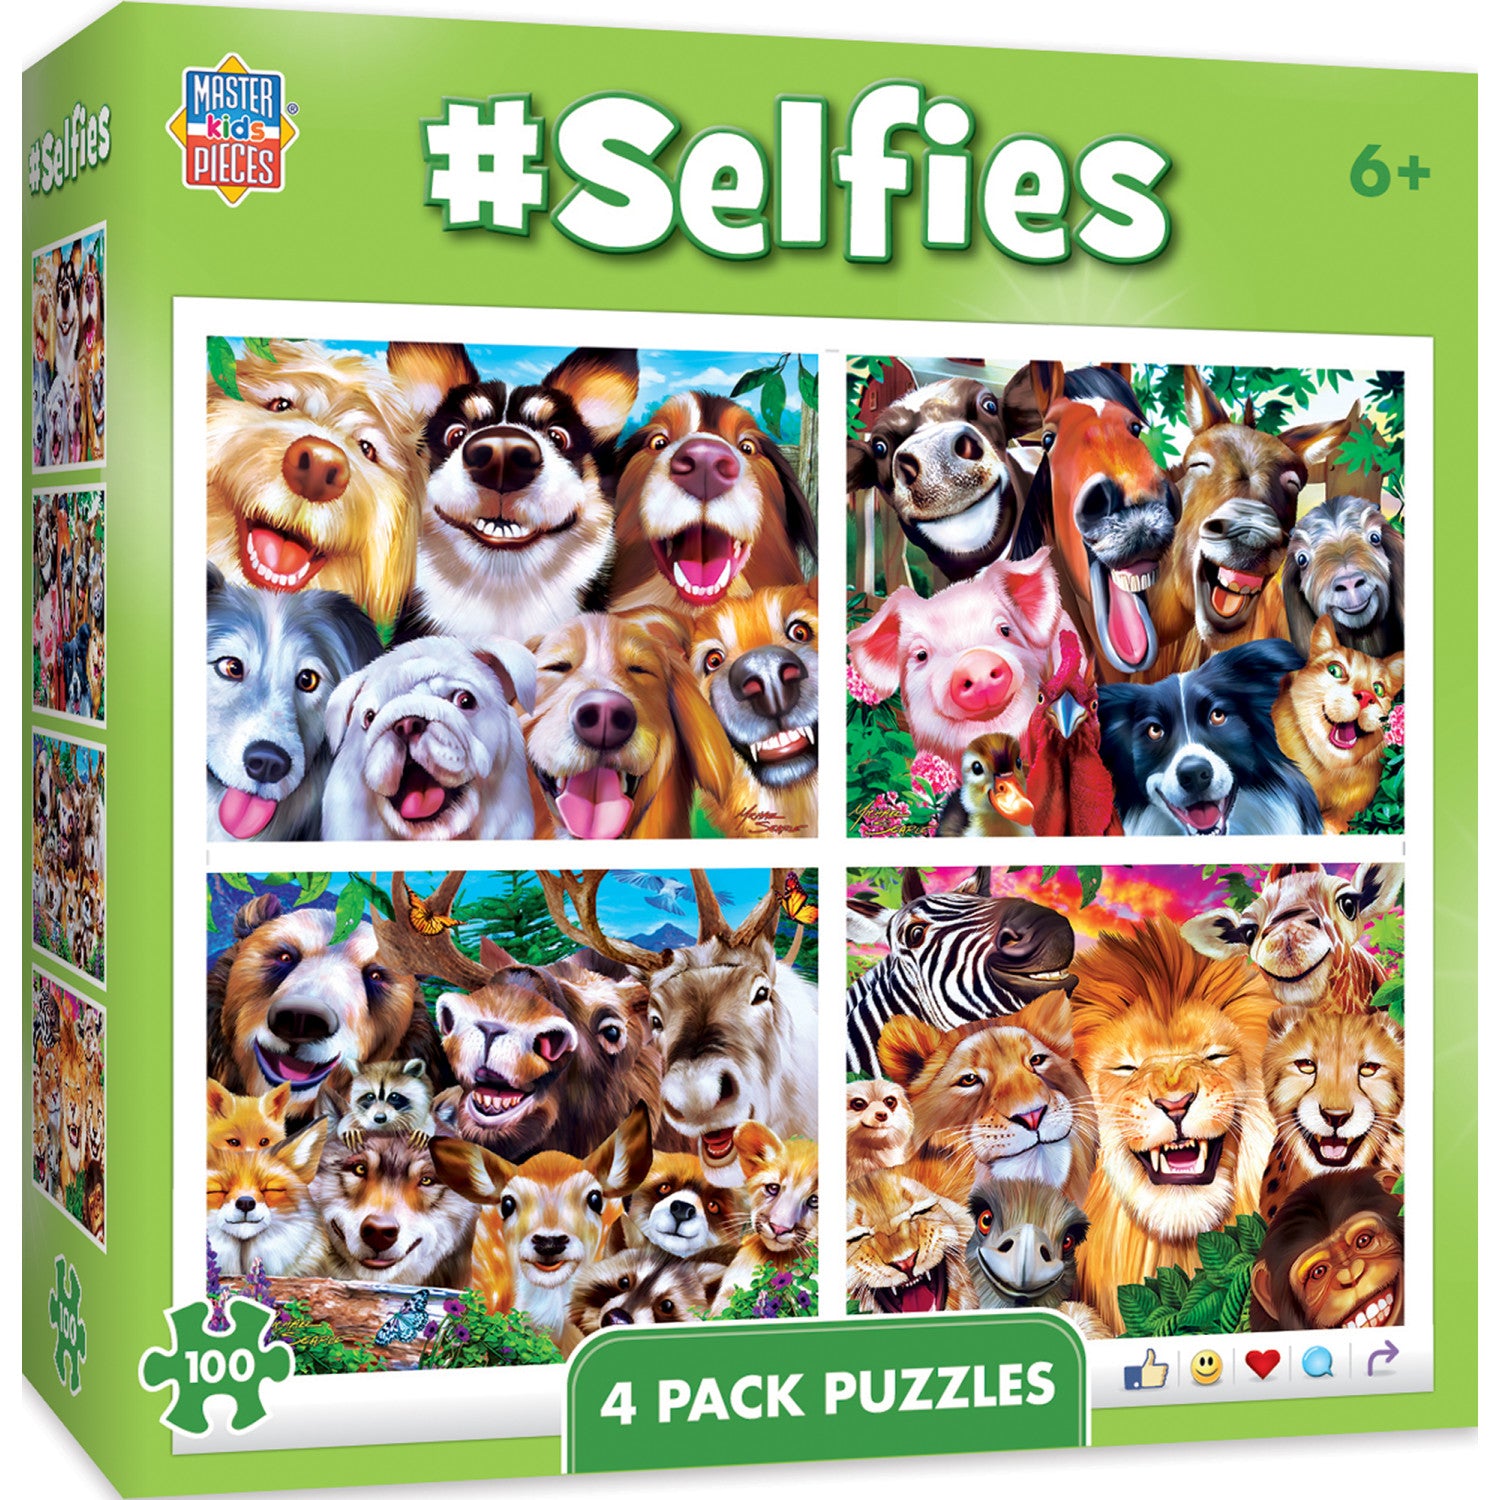 Hello World! Animals 4 Pack - 100 Piece Kids Puzzle